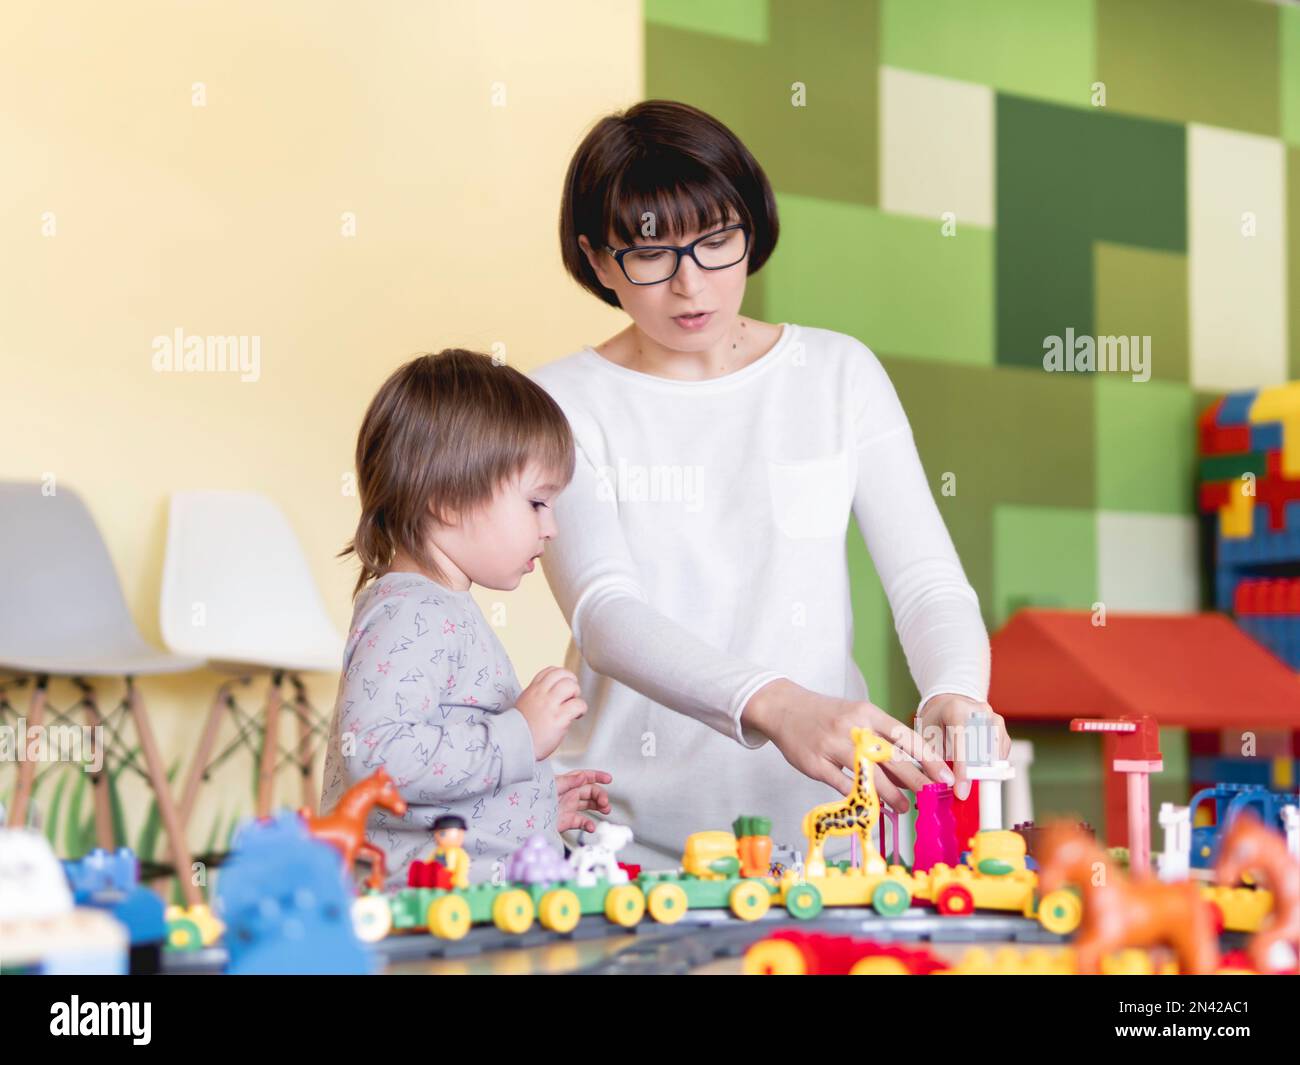 Ihr Kind spielt mit bunten Spielwürfeln, während seine Mutter oder sein Babysitter spielt. Der kleine Junge starrt auf den Spielzeugbauer. Das Innere des Kindergartens oder Kinderzimmers. Stockfoto